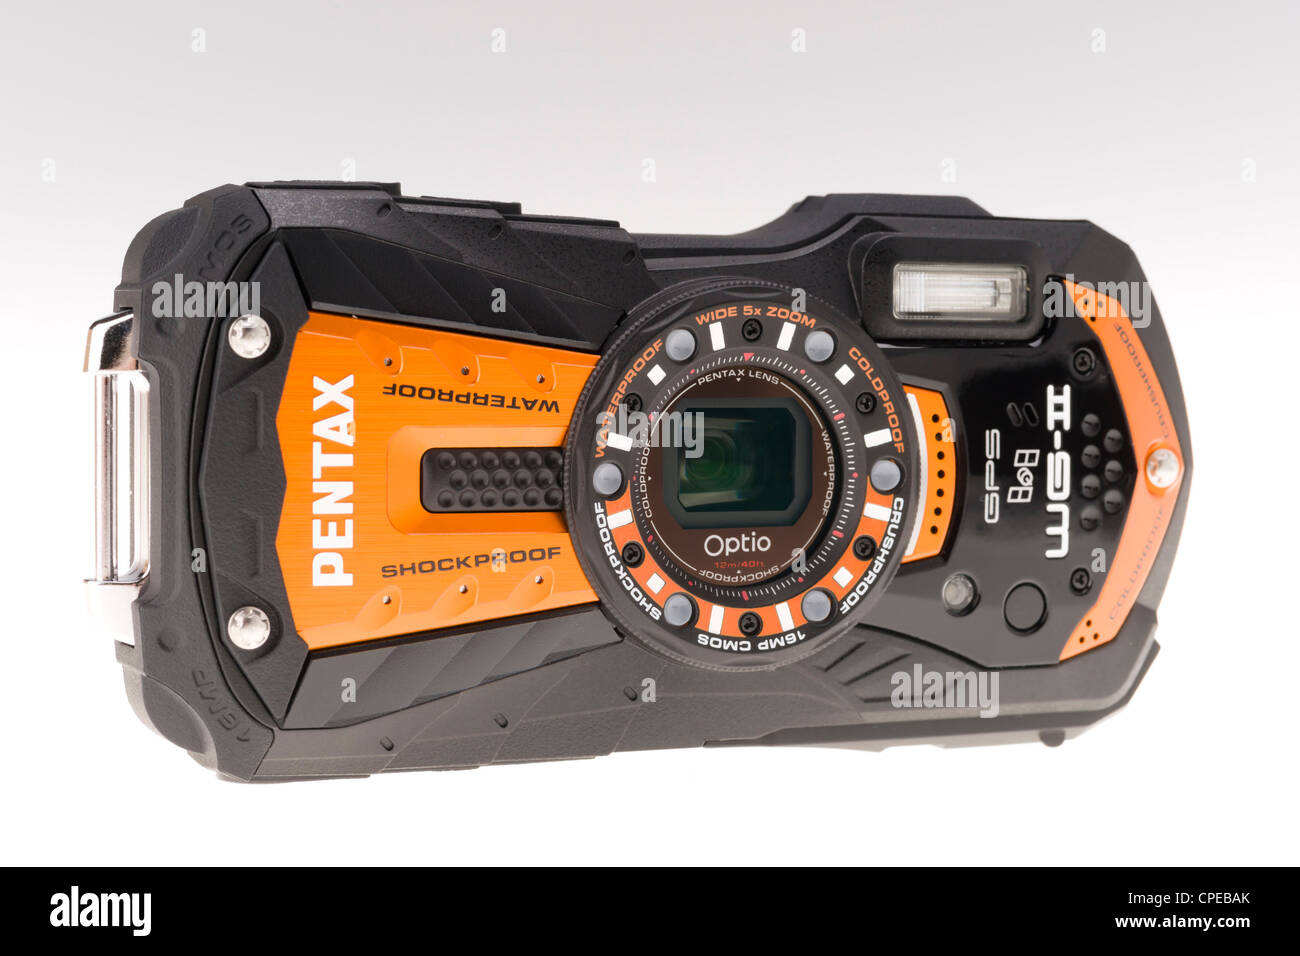 Pentax Optio WG-II cámara digital - Aventura subacuática, golpes, etc Fotografía de -